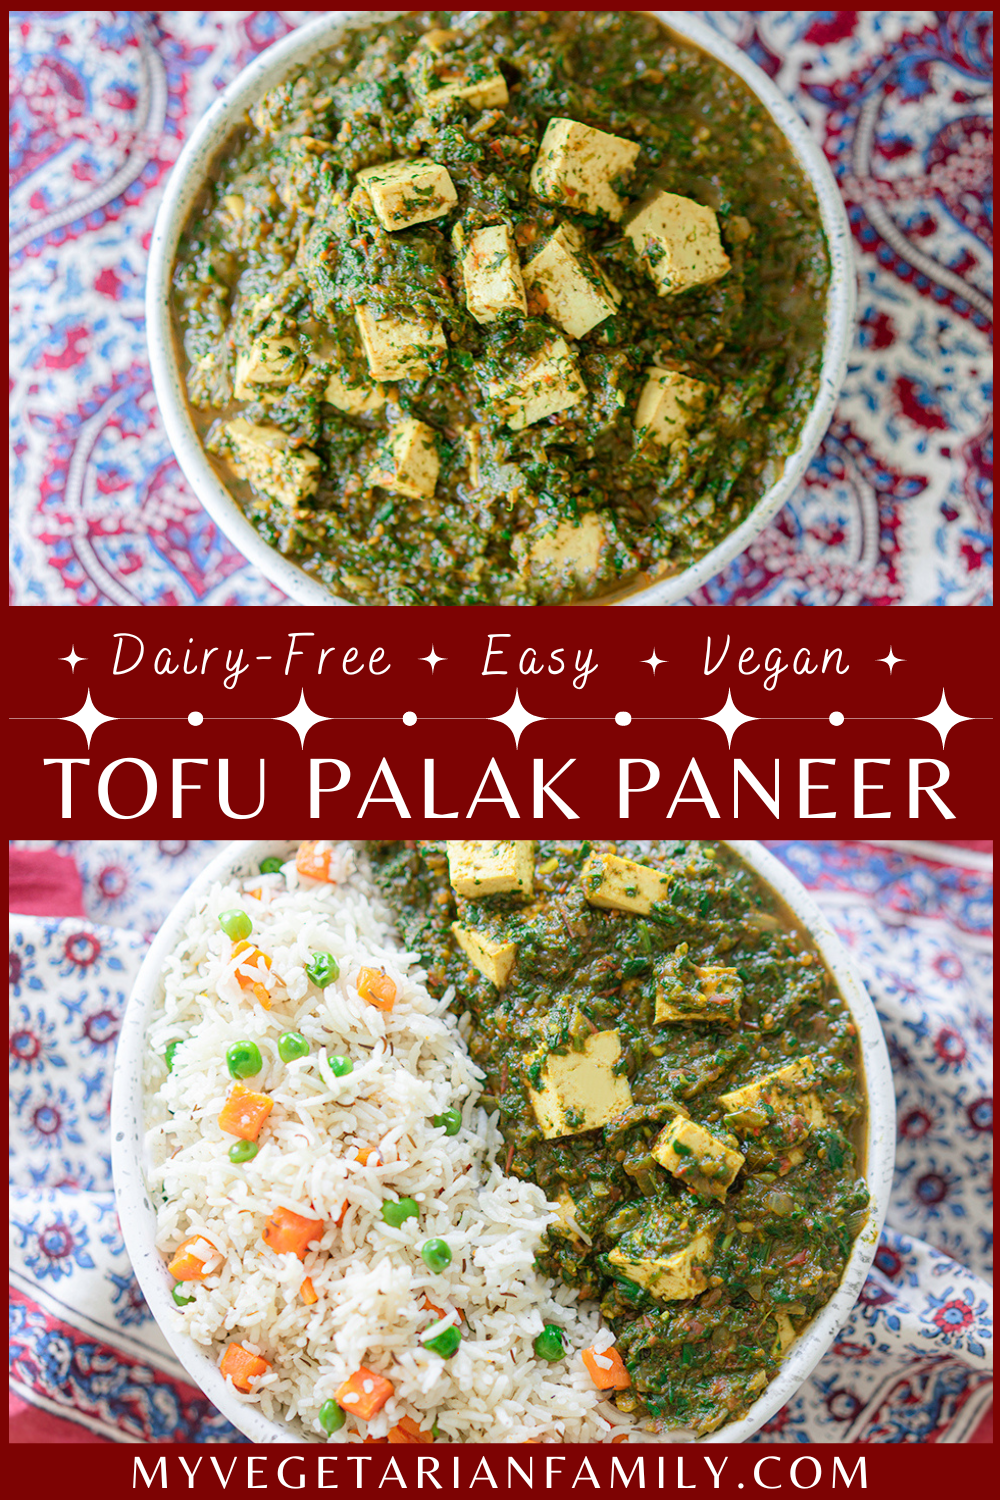 Tofu Palak Paneer Vegan | My Vegetarian Family #veganpalakpaneer #tofupalakpaneer #dairyfreepalakpaneer #incrediblyindian